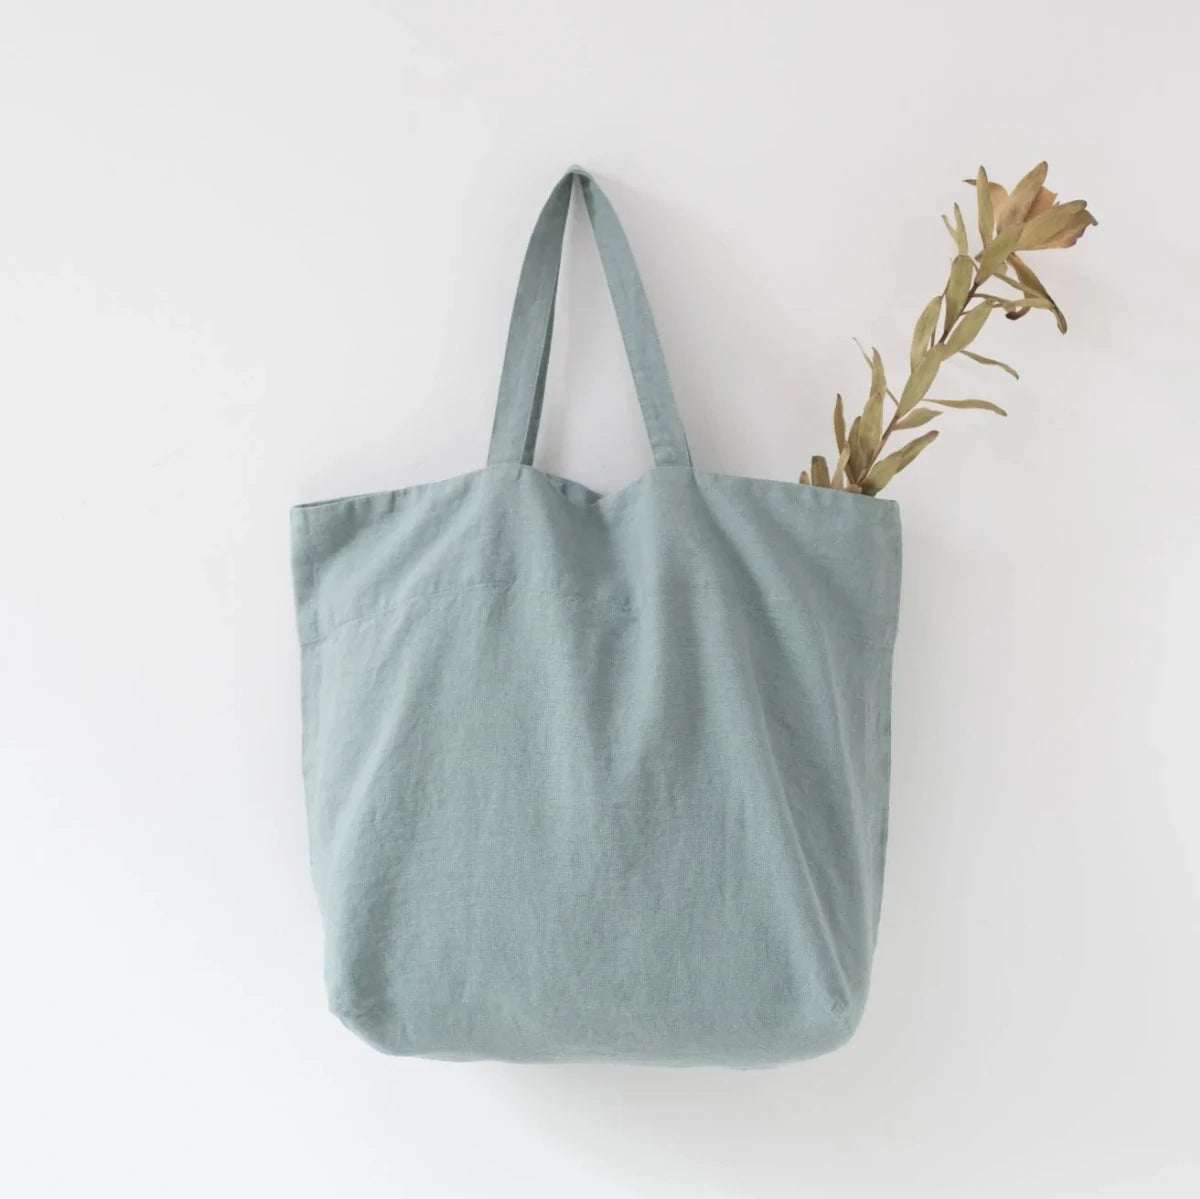 Medelstor tygväska i turkos linne som hänger på en krok. Väskan har formen av en rektangel med medellånga handtag. Från väskan sticker en grön torkad kvist upp.